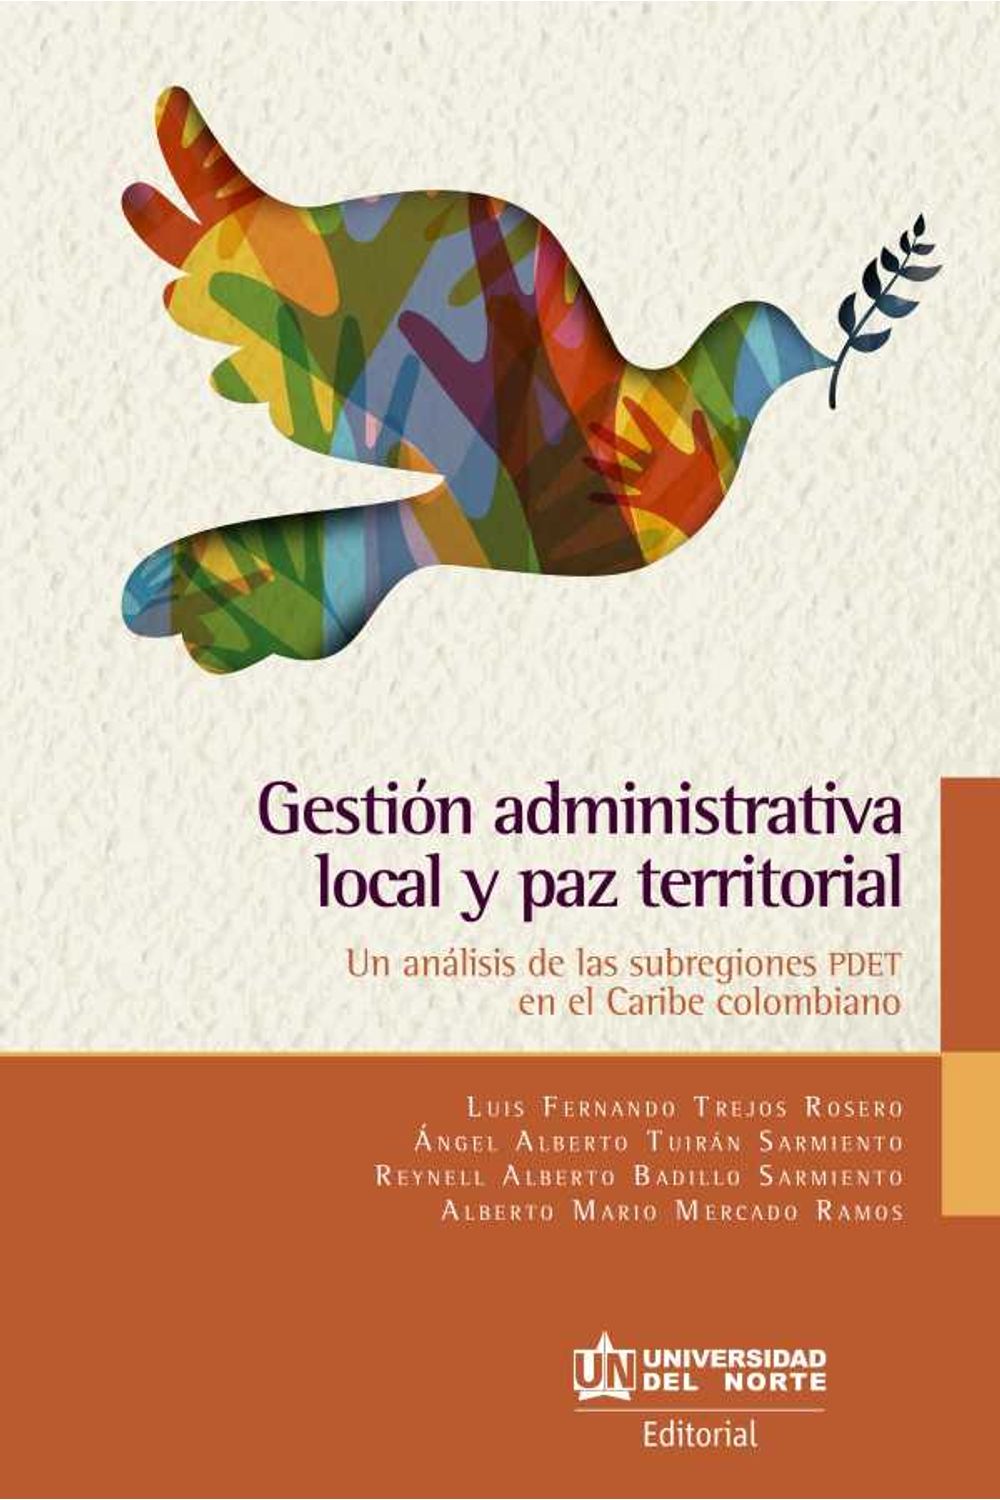 bw-gestioacuten-administrativa-local-y-paz-territorial-u-del-norte-editorial-9789587892543